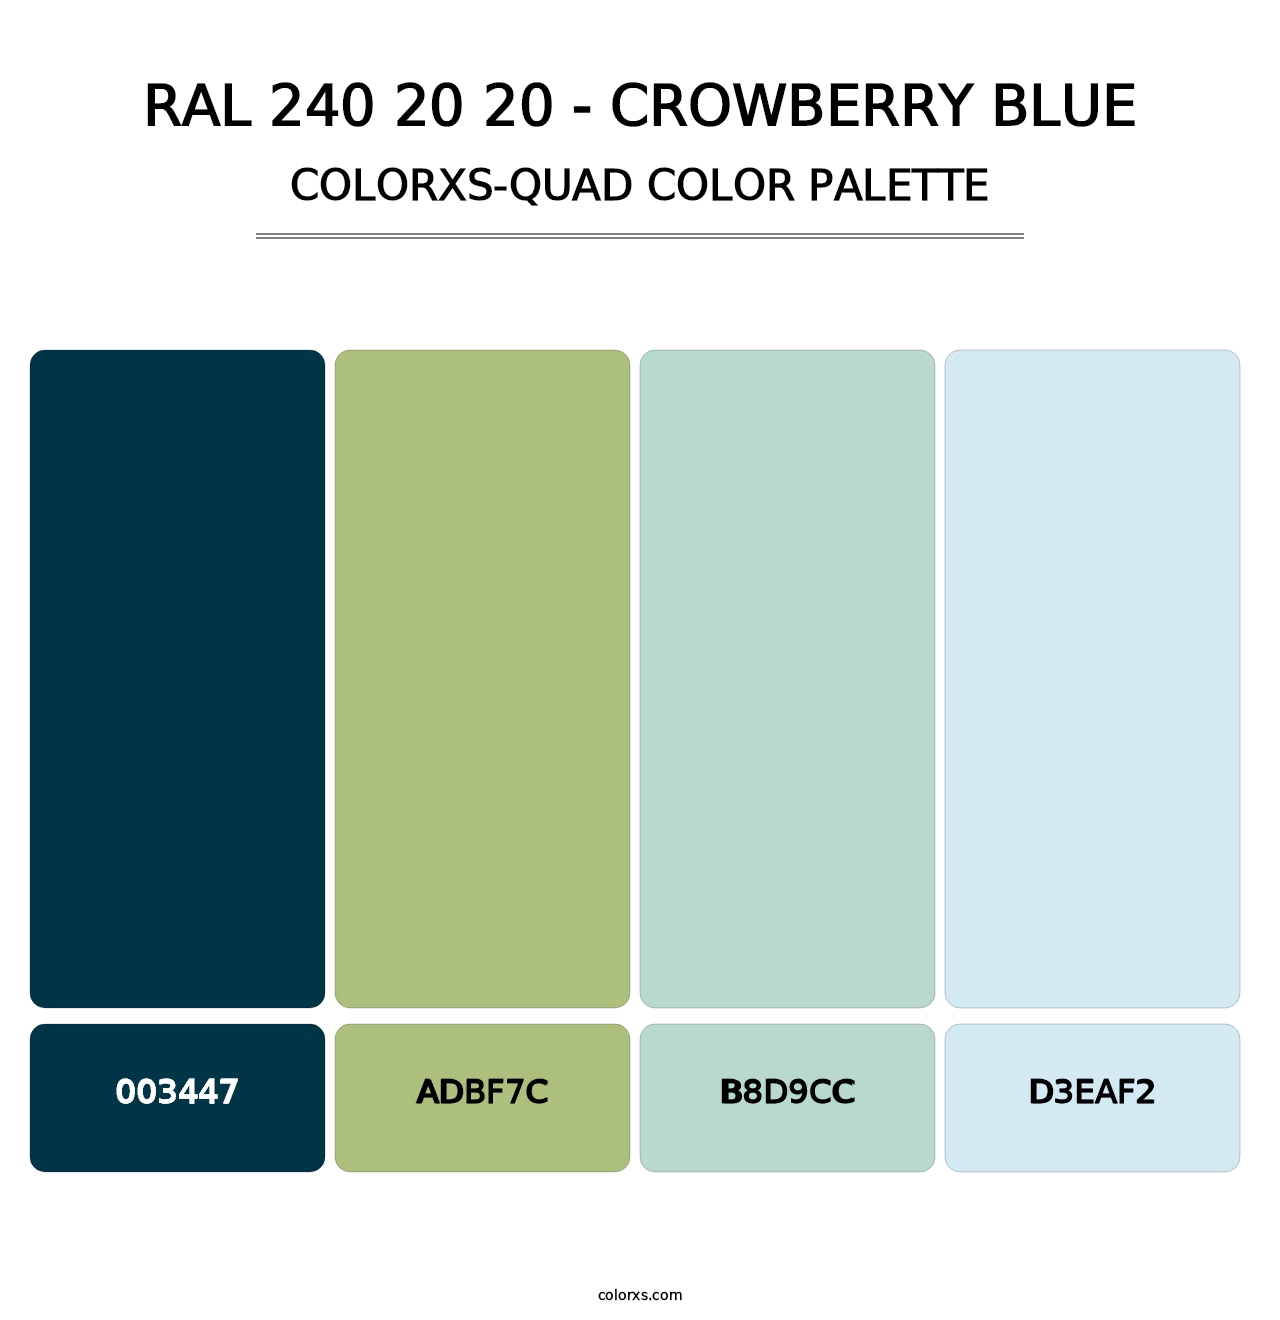 RAL 240 20 20 - Crowberry Blue - Colorxs Quad Palette